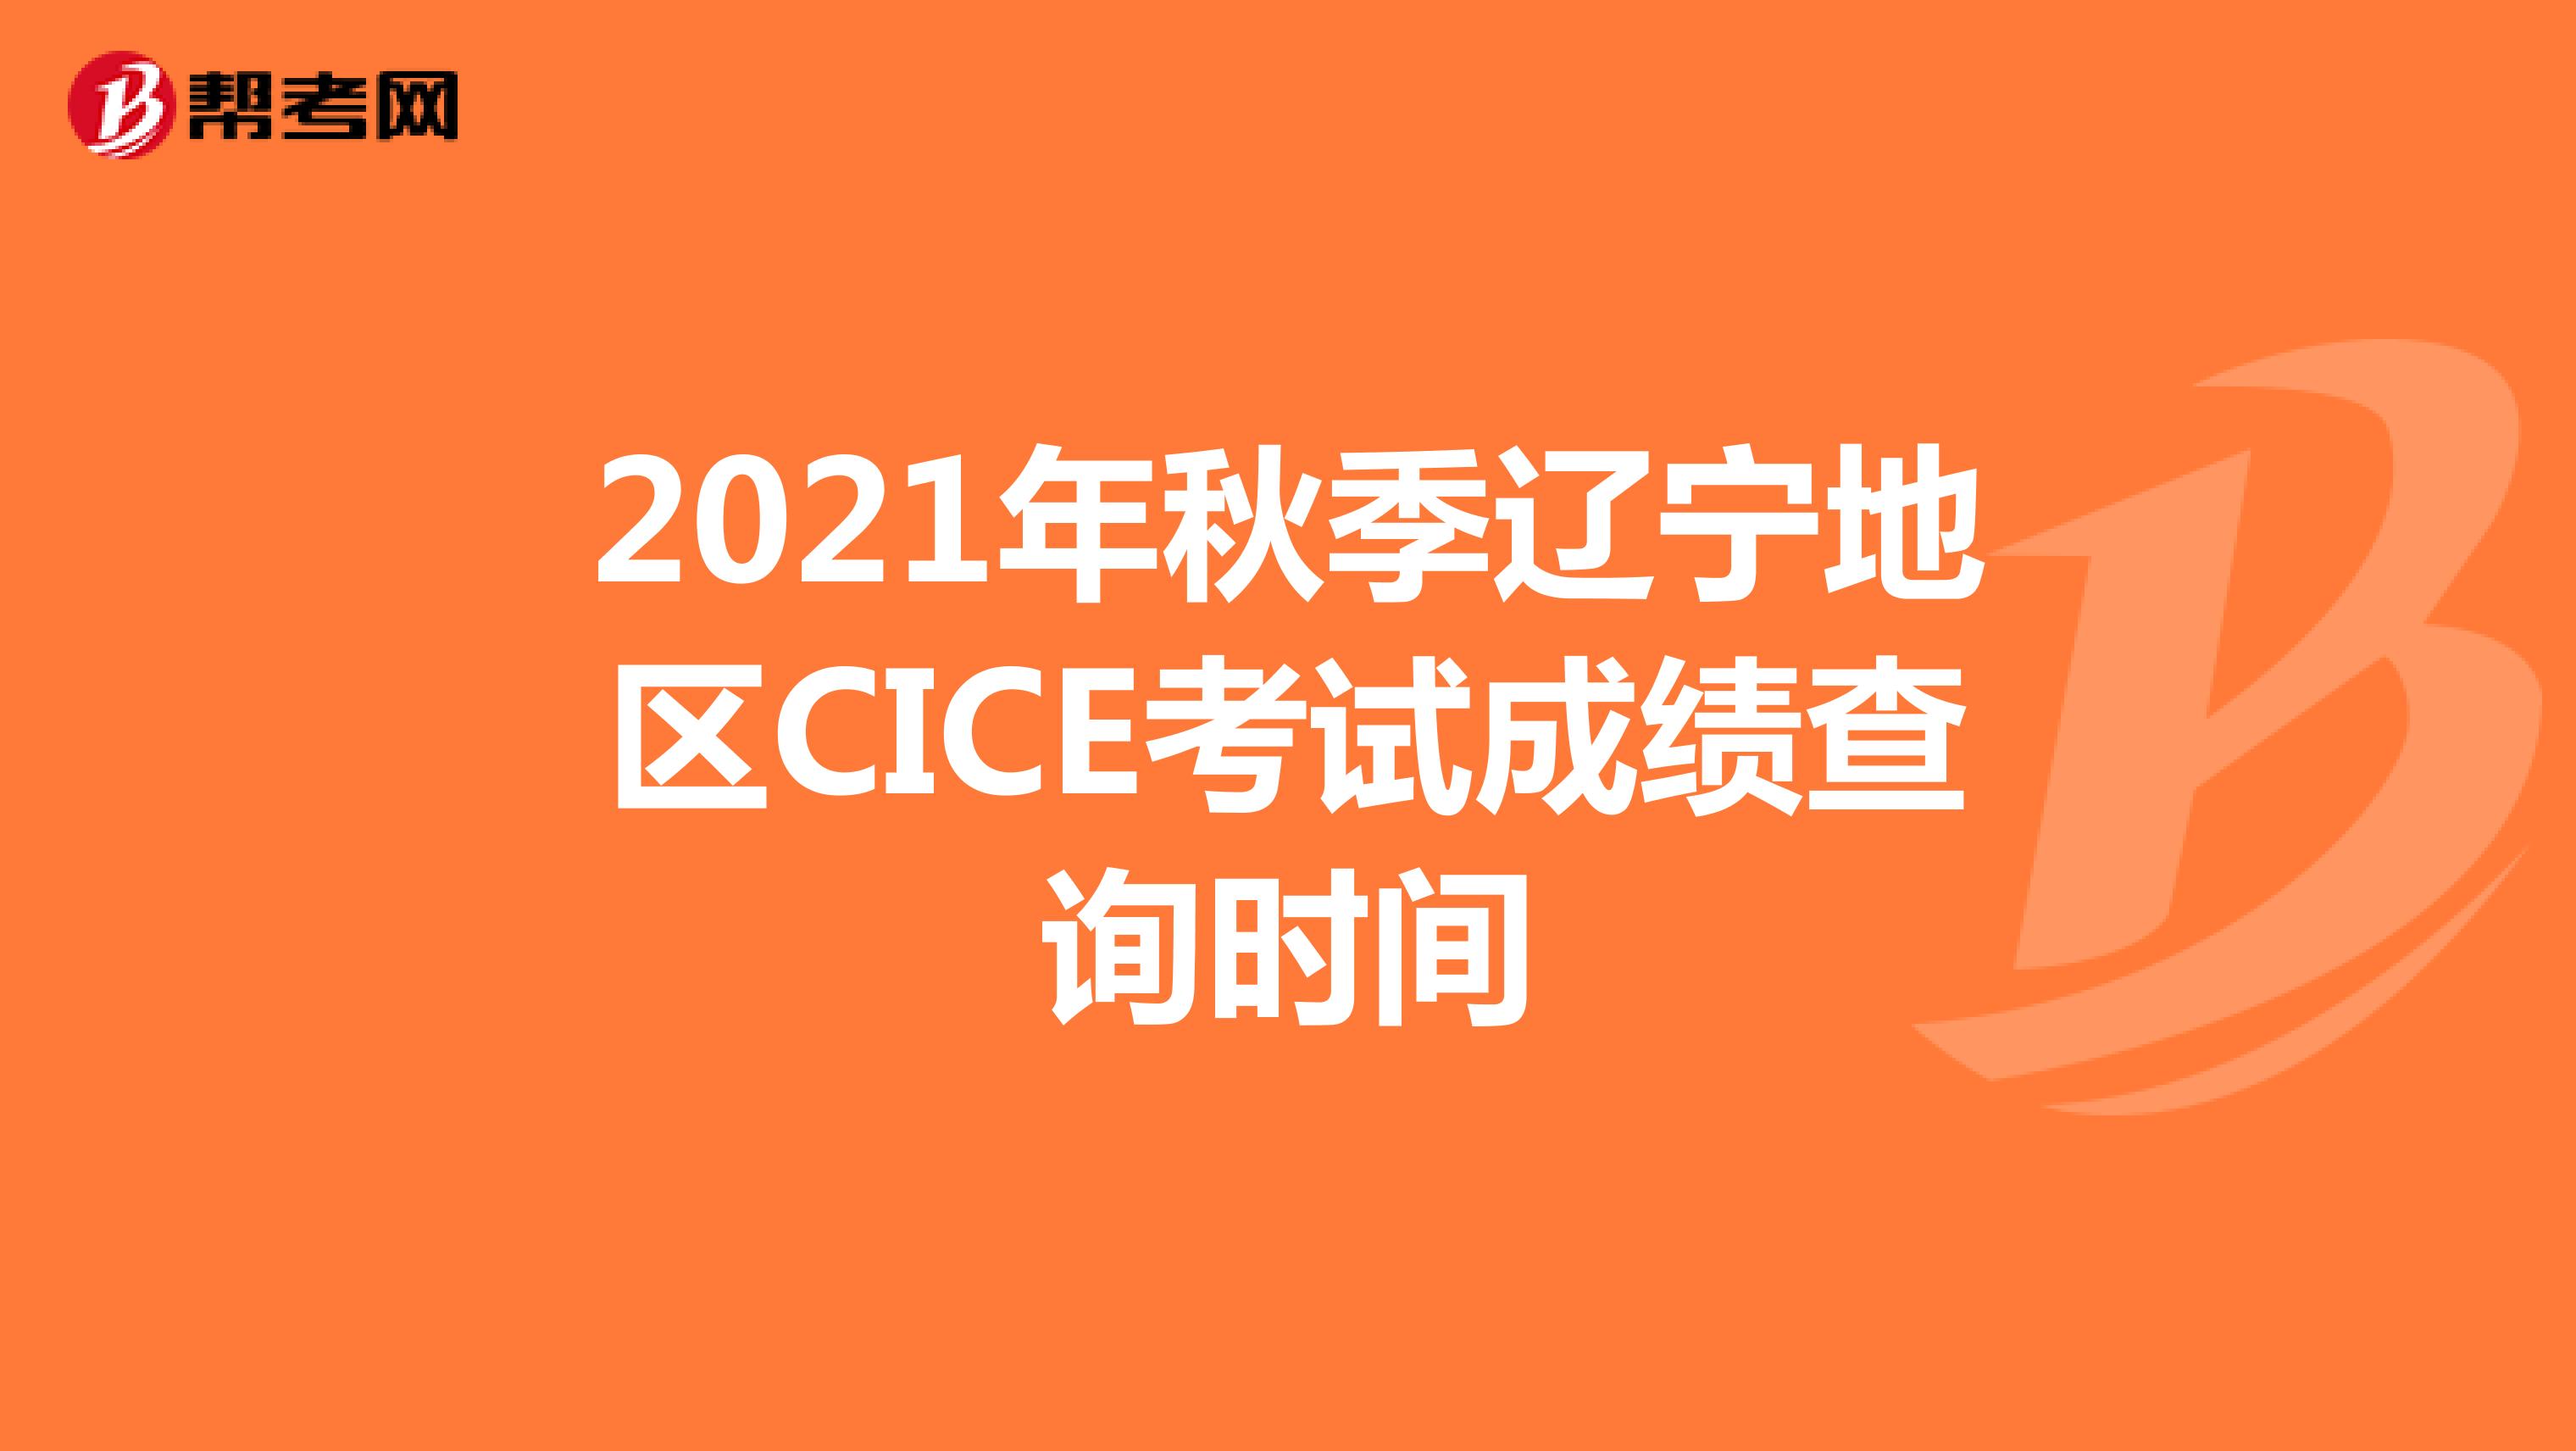 2021年秋季辽宁地区CICE考试成绩查询时间